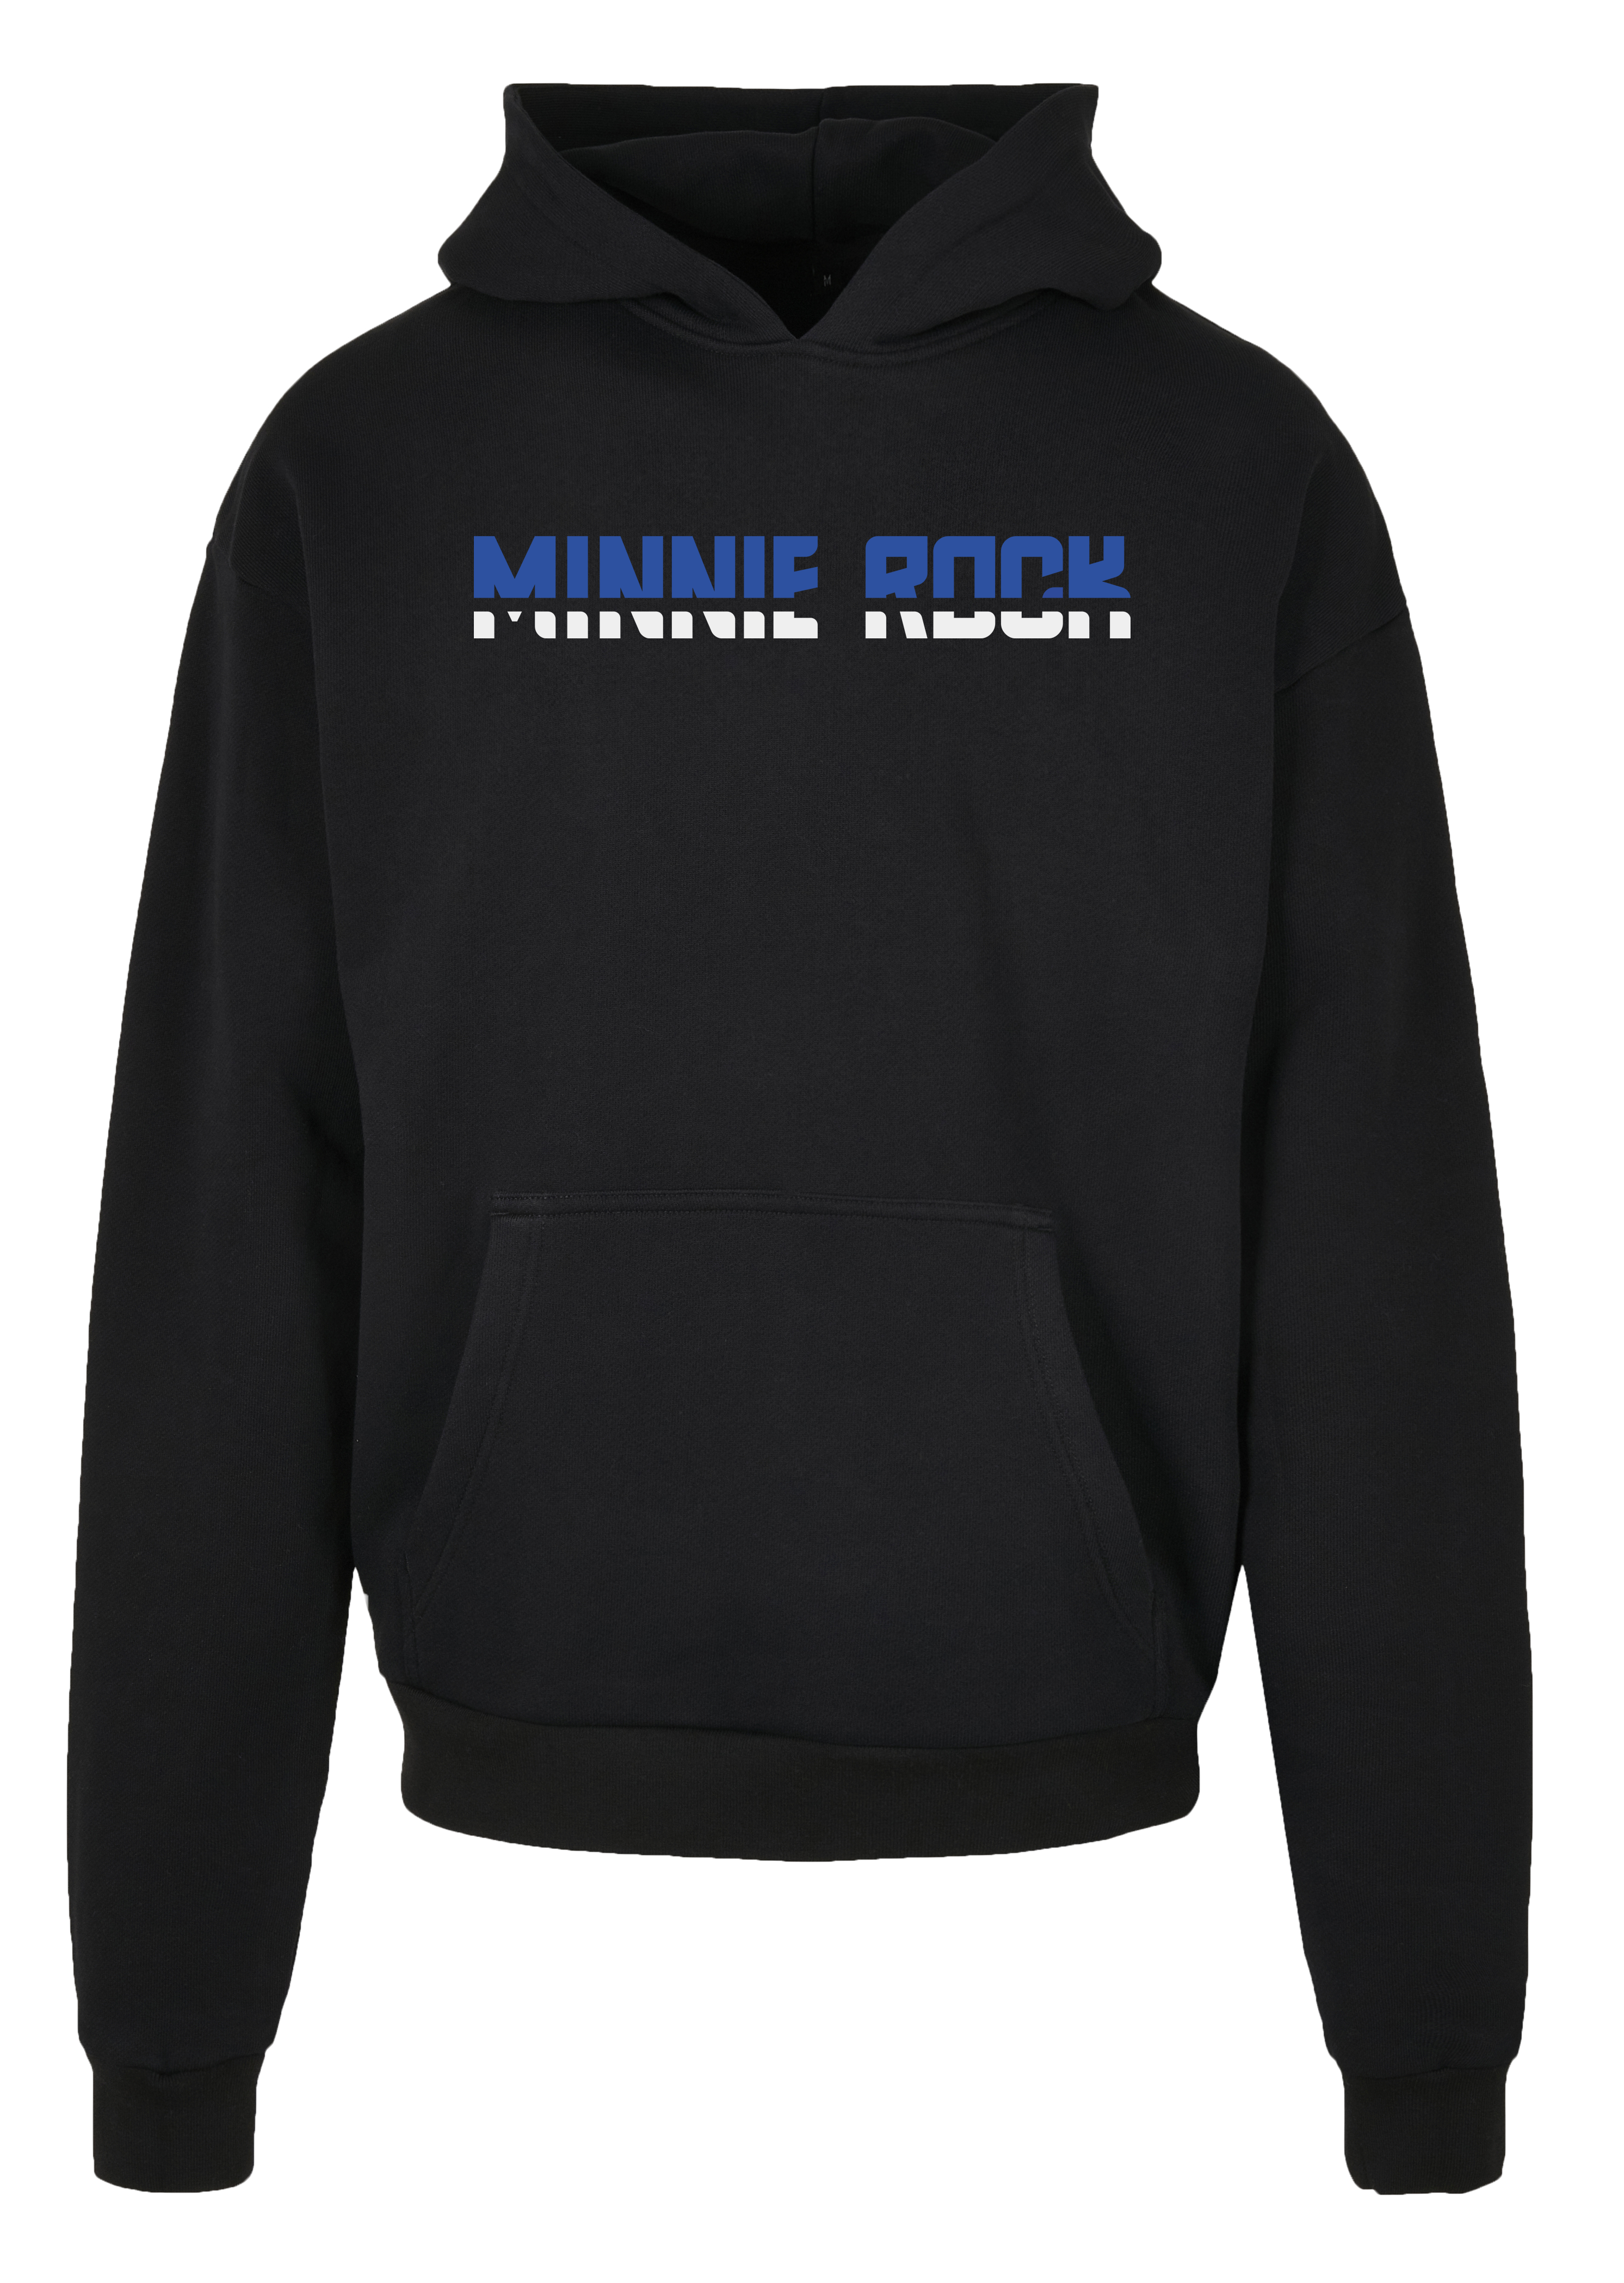 minnie rock - Schriftzug Unisex Oversized Hoodie [schwarz]